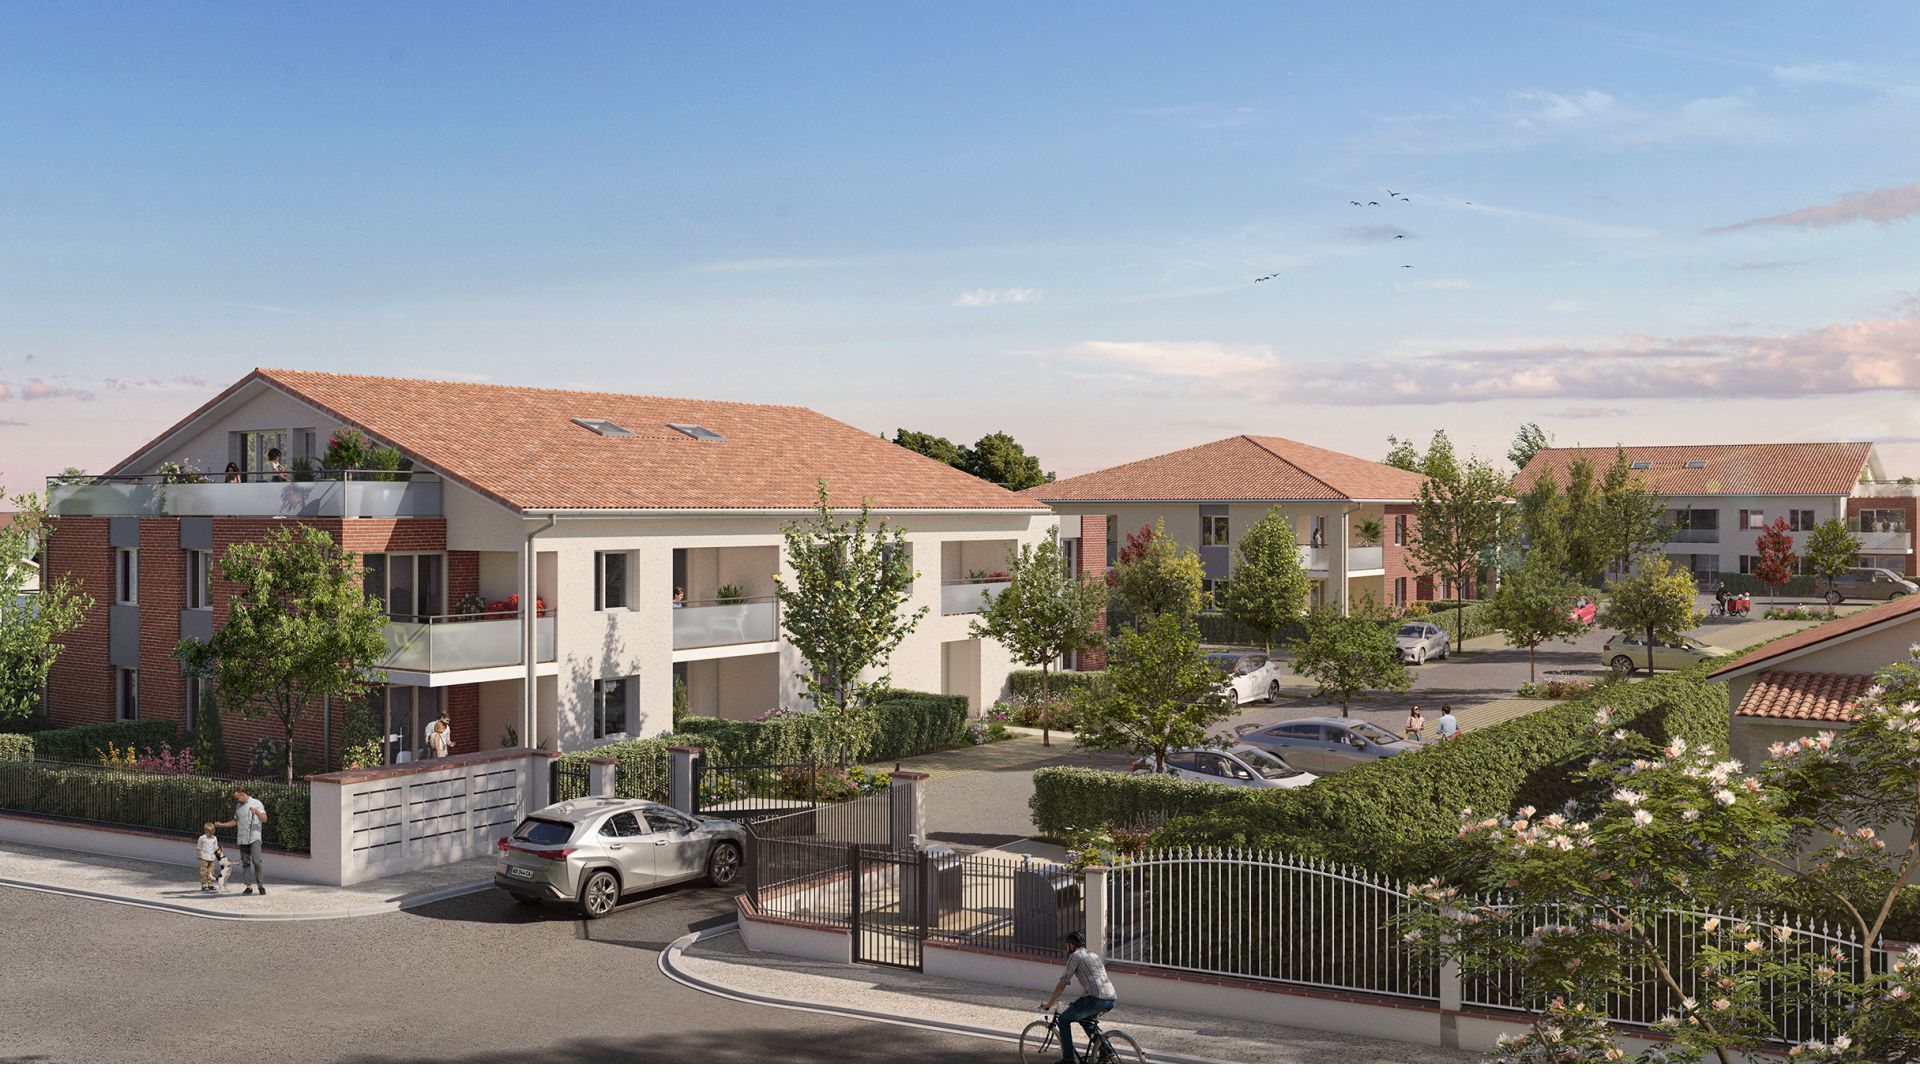 Greencity immobilier - achat appartements neufs du T2 au T3 - Résidence Le Trévise - 31600 EAUNES